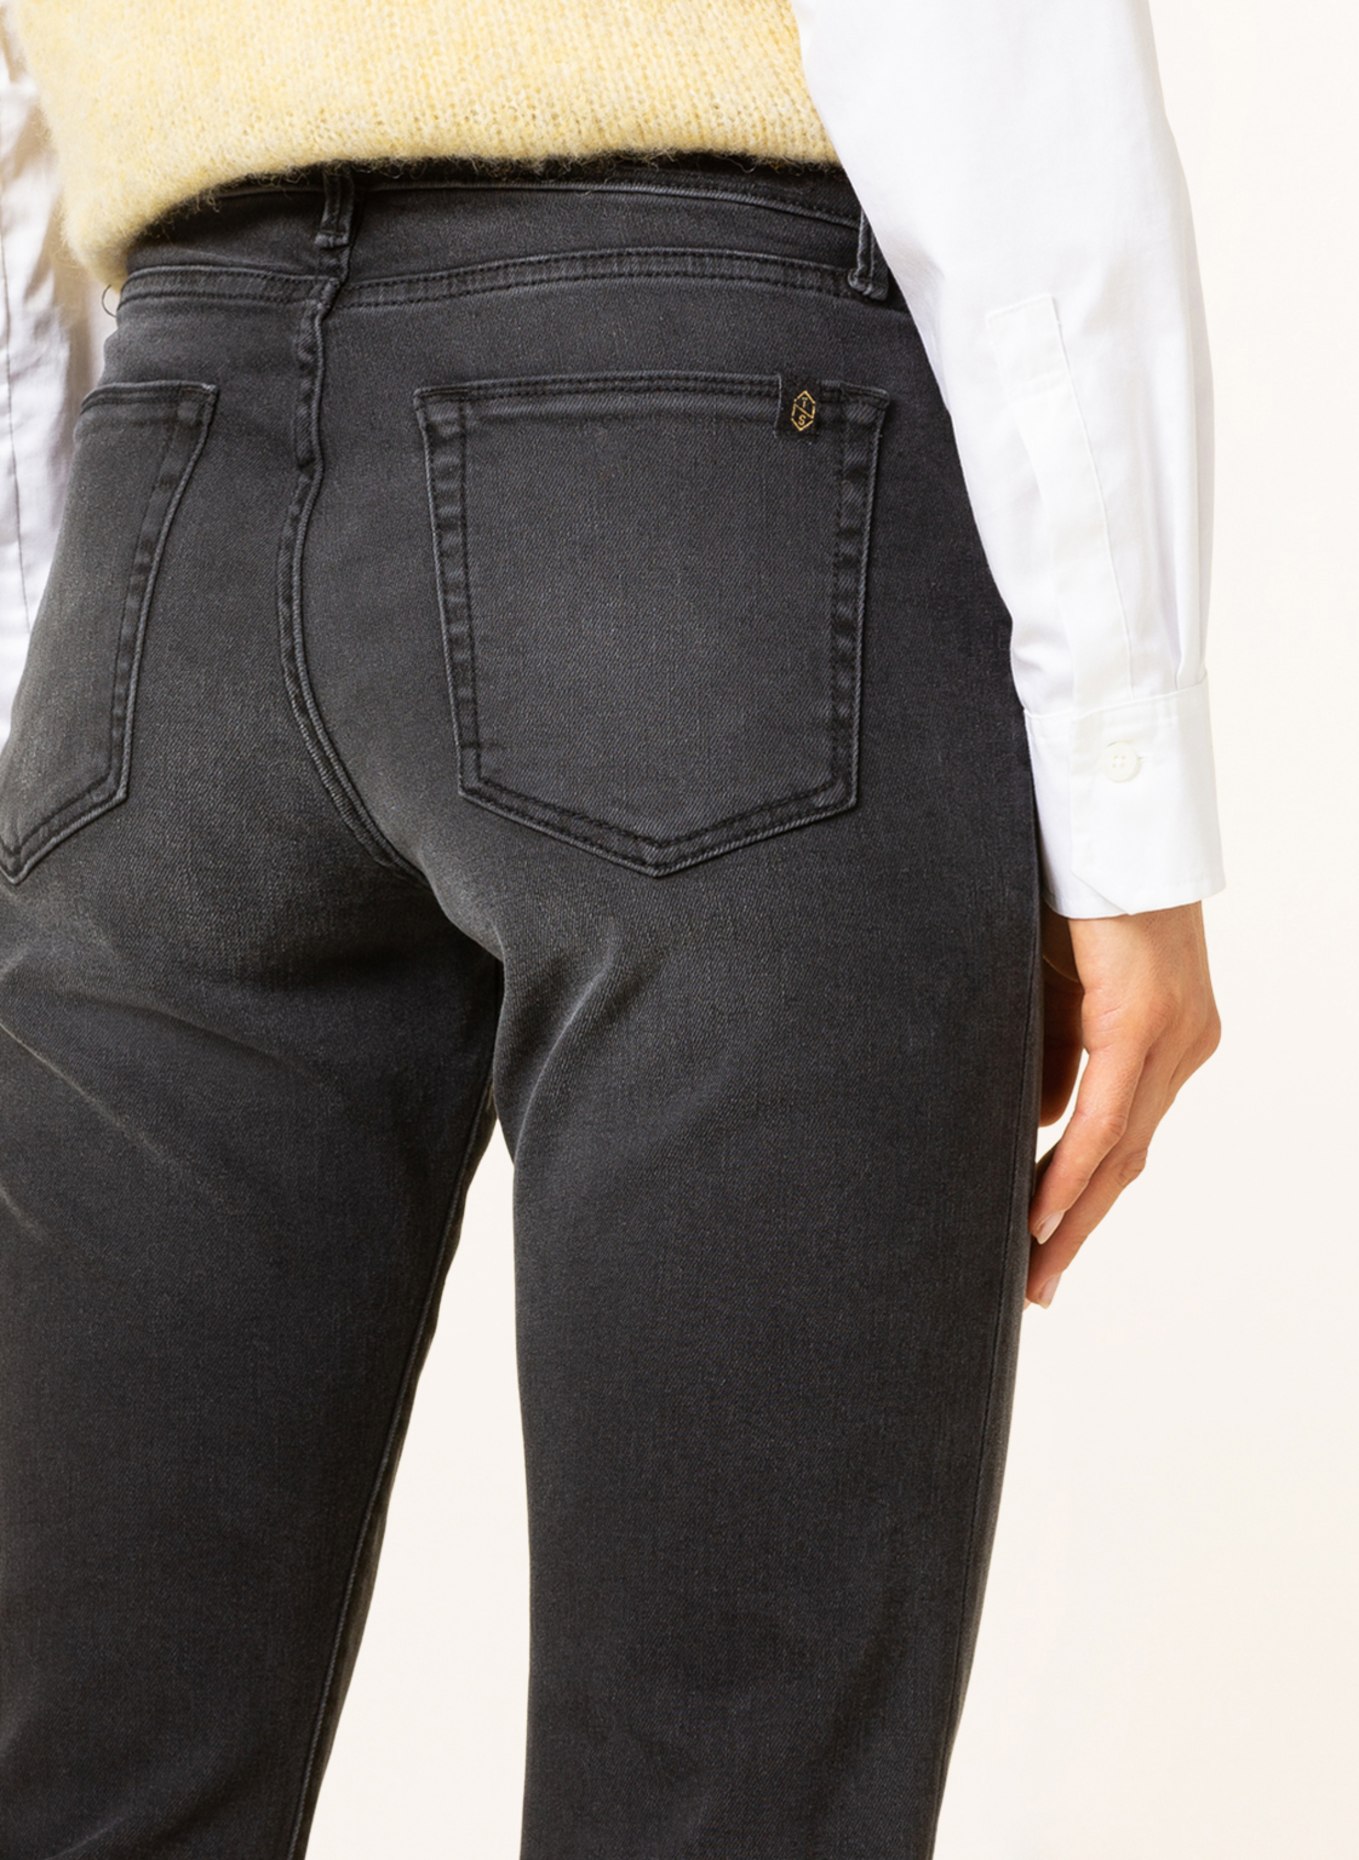 THE.NIM STANDARD Jeans BONNIE, Color: W652-BBK Anthrazit (Image 5)